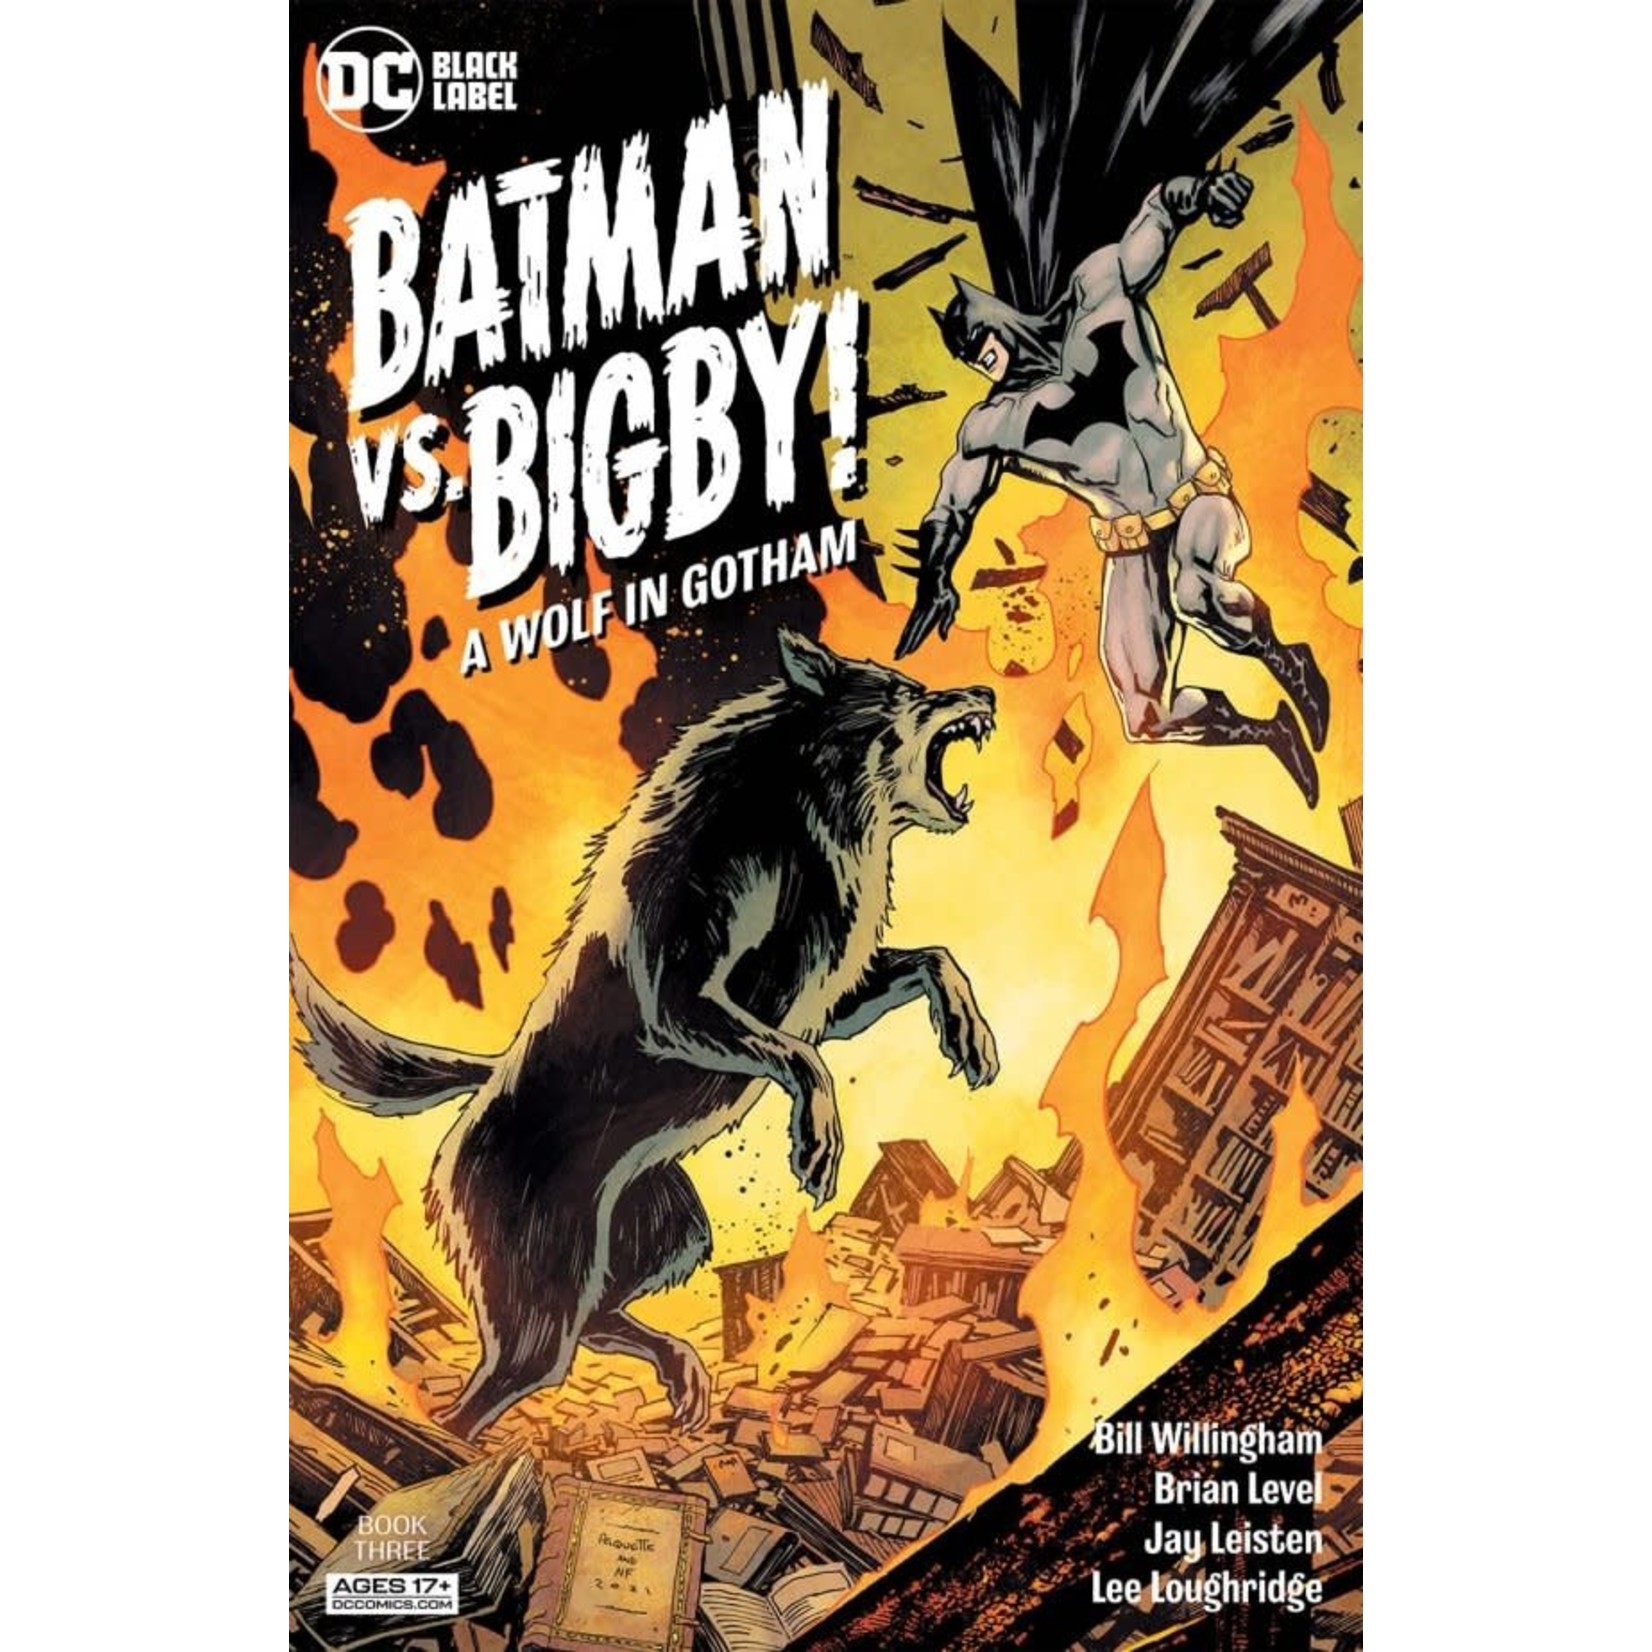 DC Comics Batman vs. Bigby! A Wolf in Gotham #3